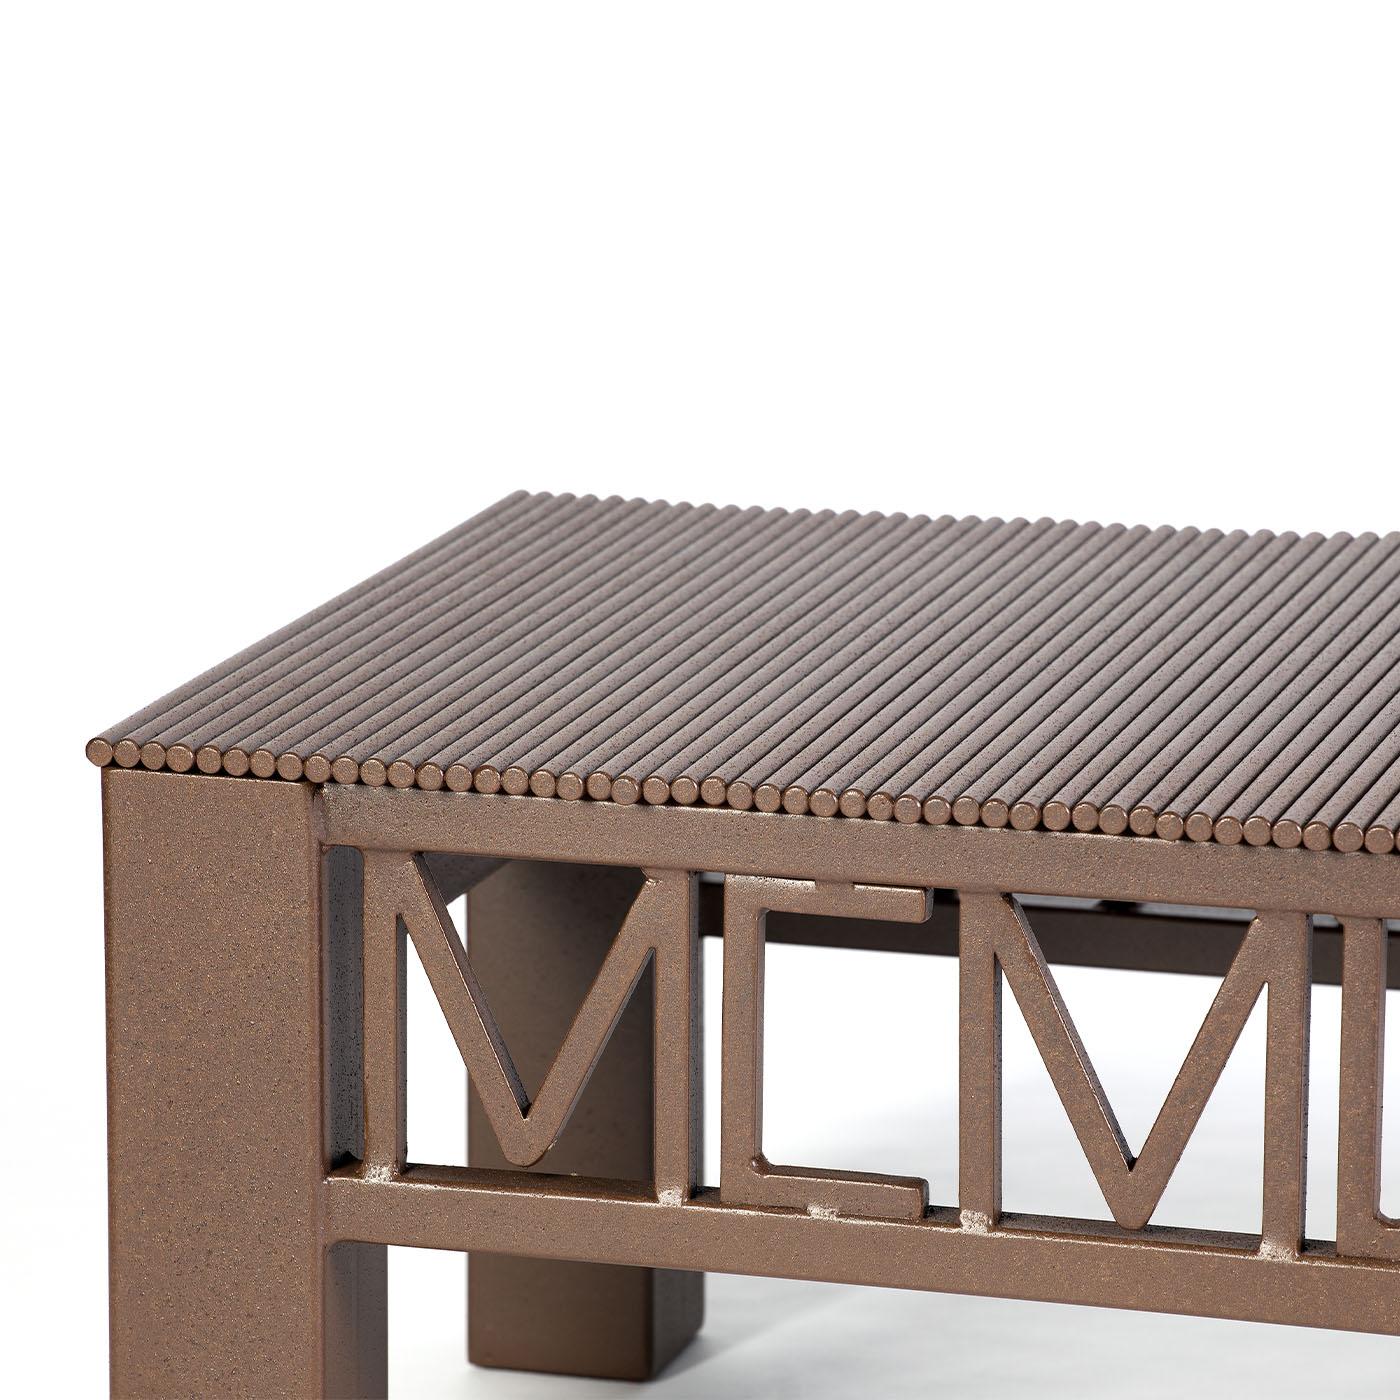 Cette table basse est une démonstration magistrale du travail du métal. Elle est entièrement fabriquée à partir de tiges de fer, coupées et solidement soudées une à une. Nommé d'après le cadre frappant reproduisant l'année 1988 en chiffres romains